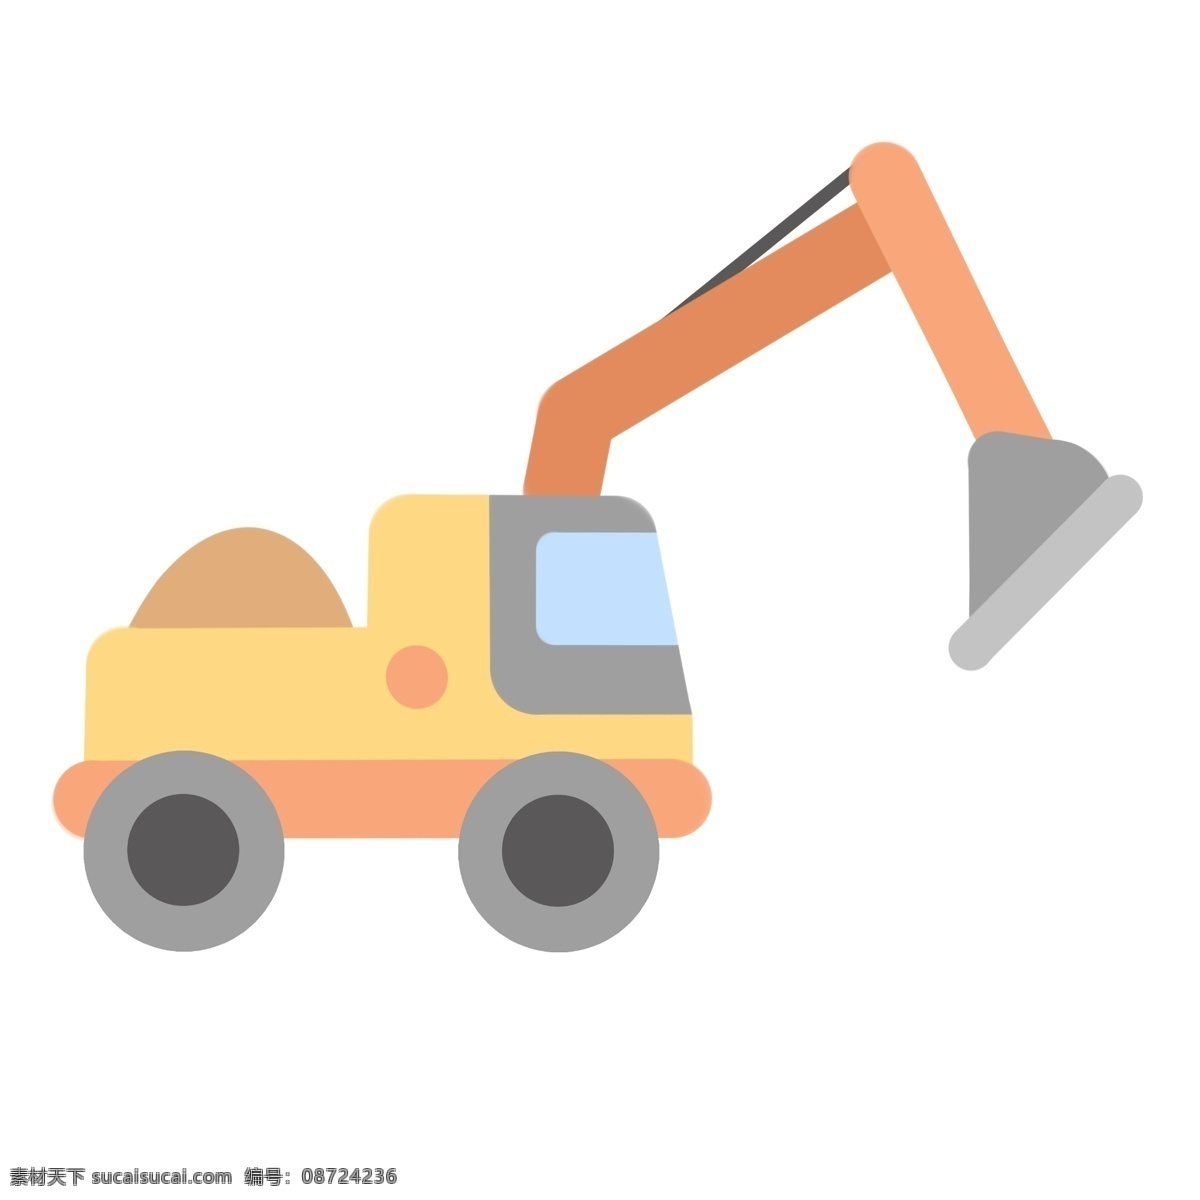 卡通 黄色 挖掘机 插图 一辆挖掘机 挖土机 重型机械 卡通挖掘机 黄色挖掘机 施工机械